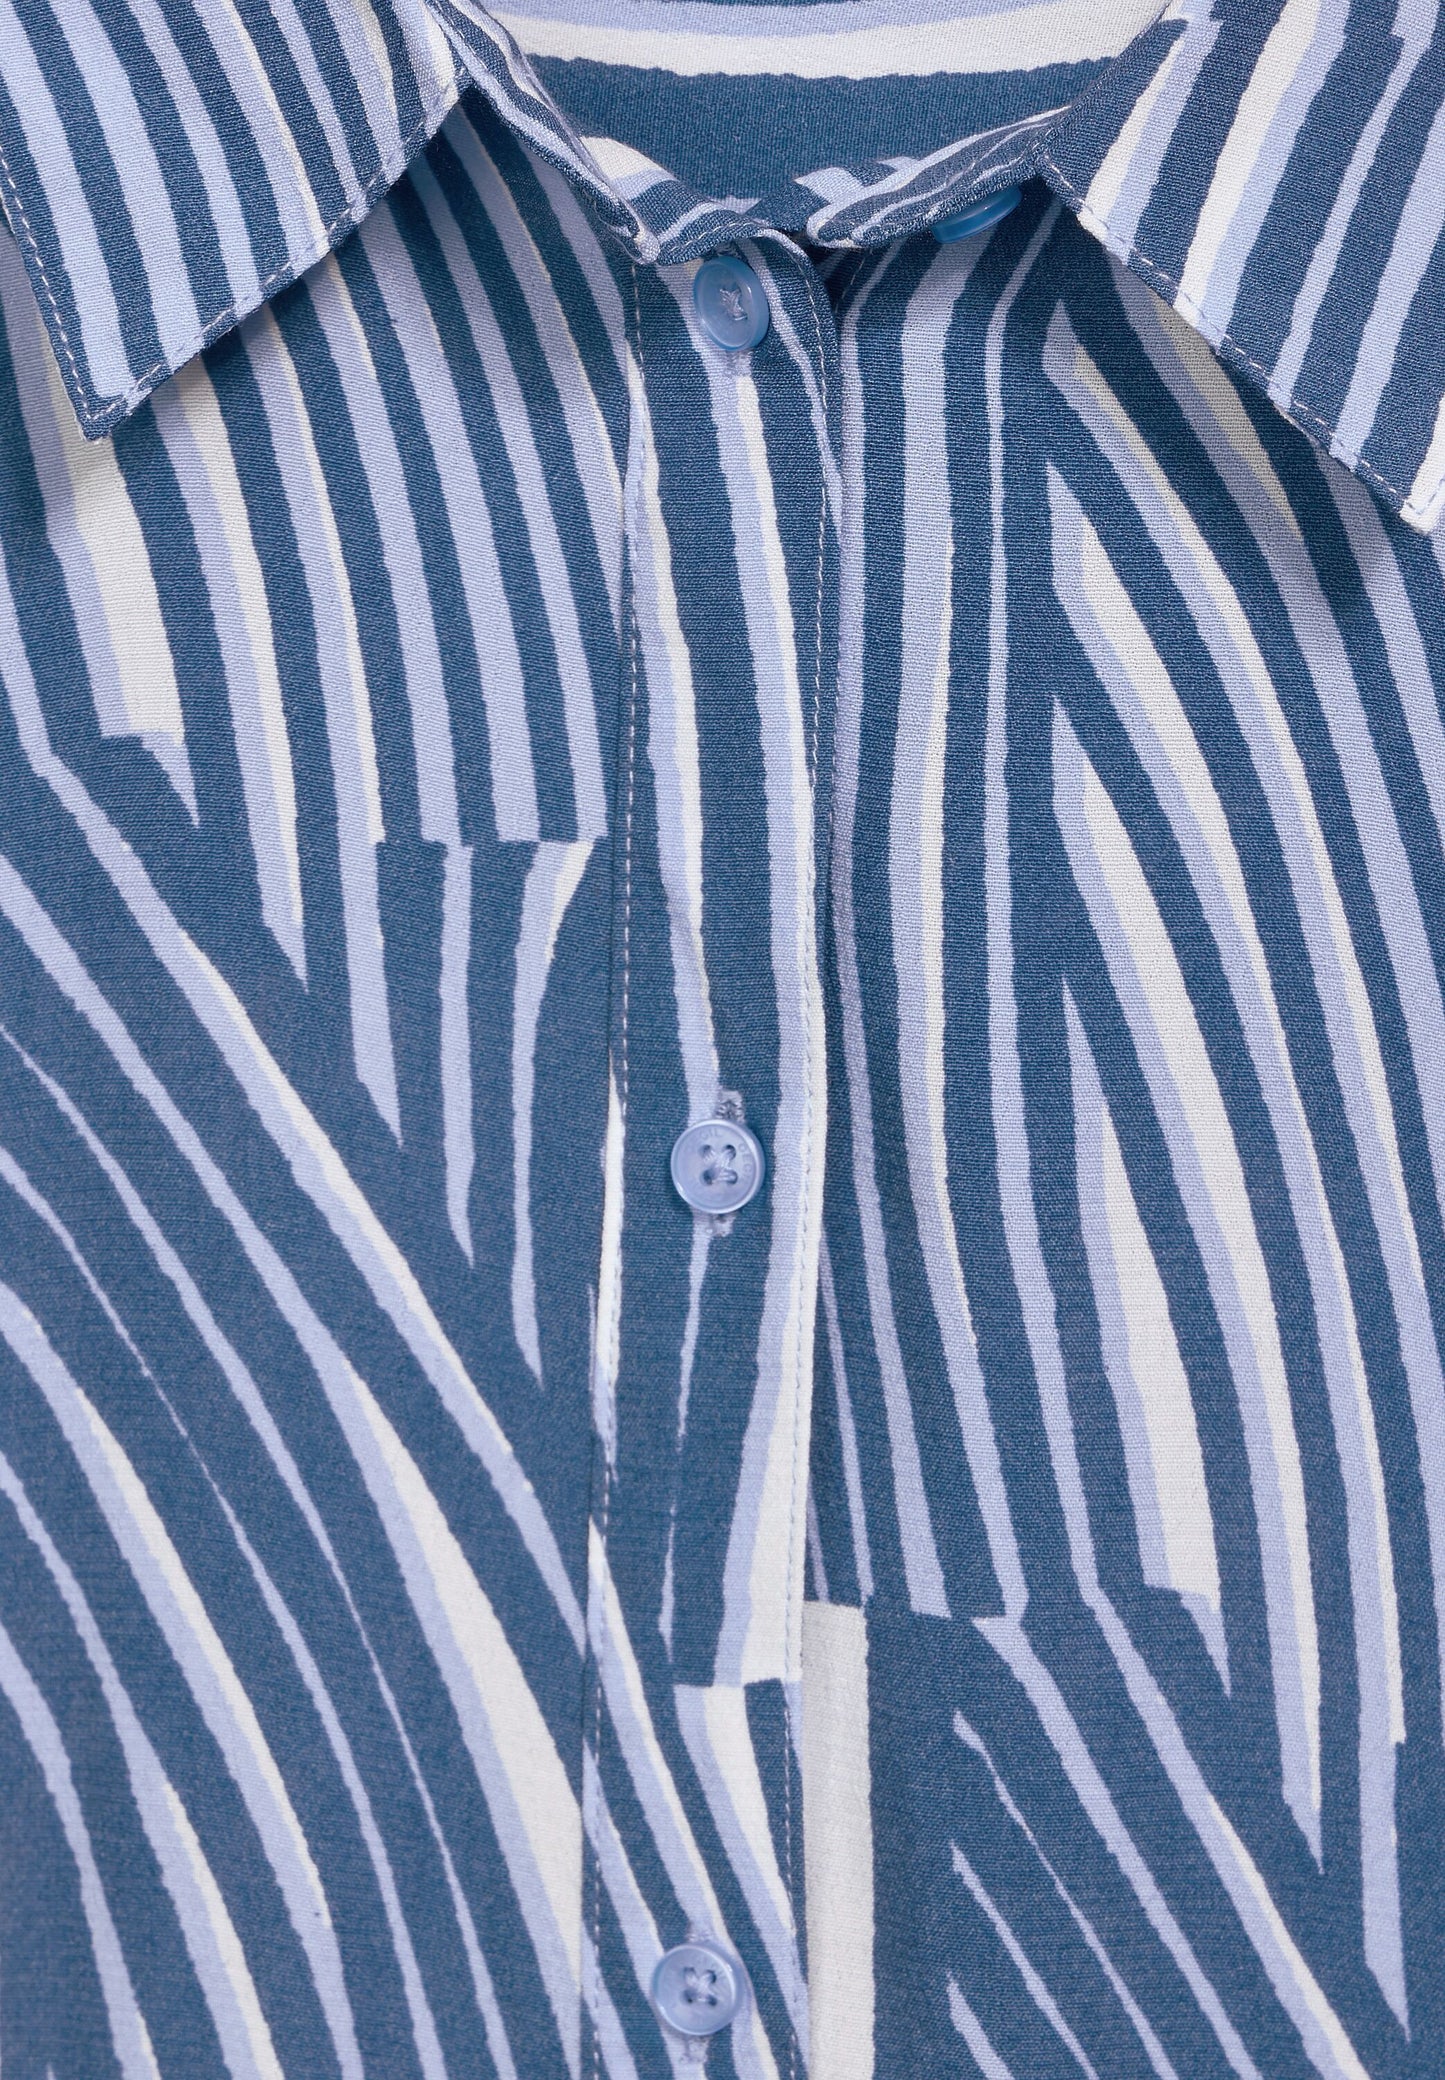 CECIL Blusenshirt - Bluse mit Streifen - blau